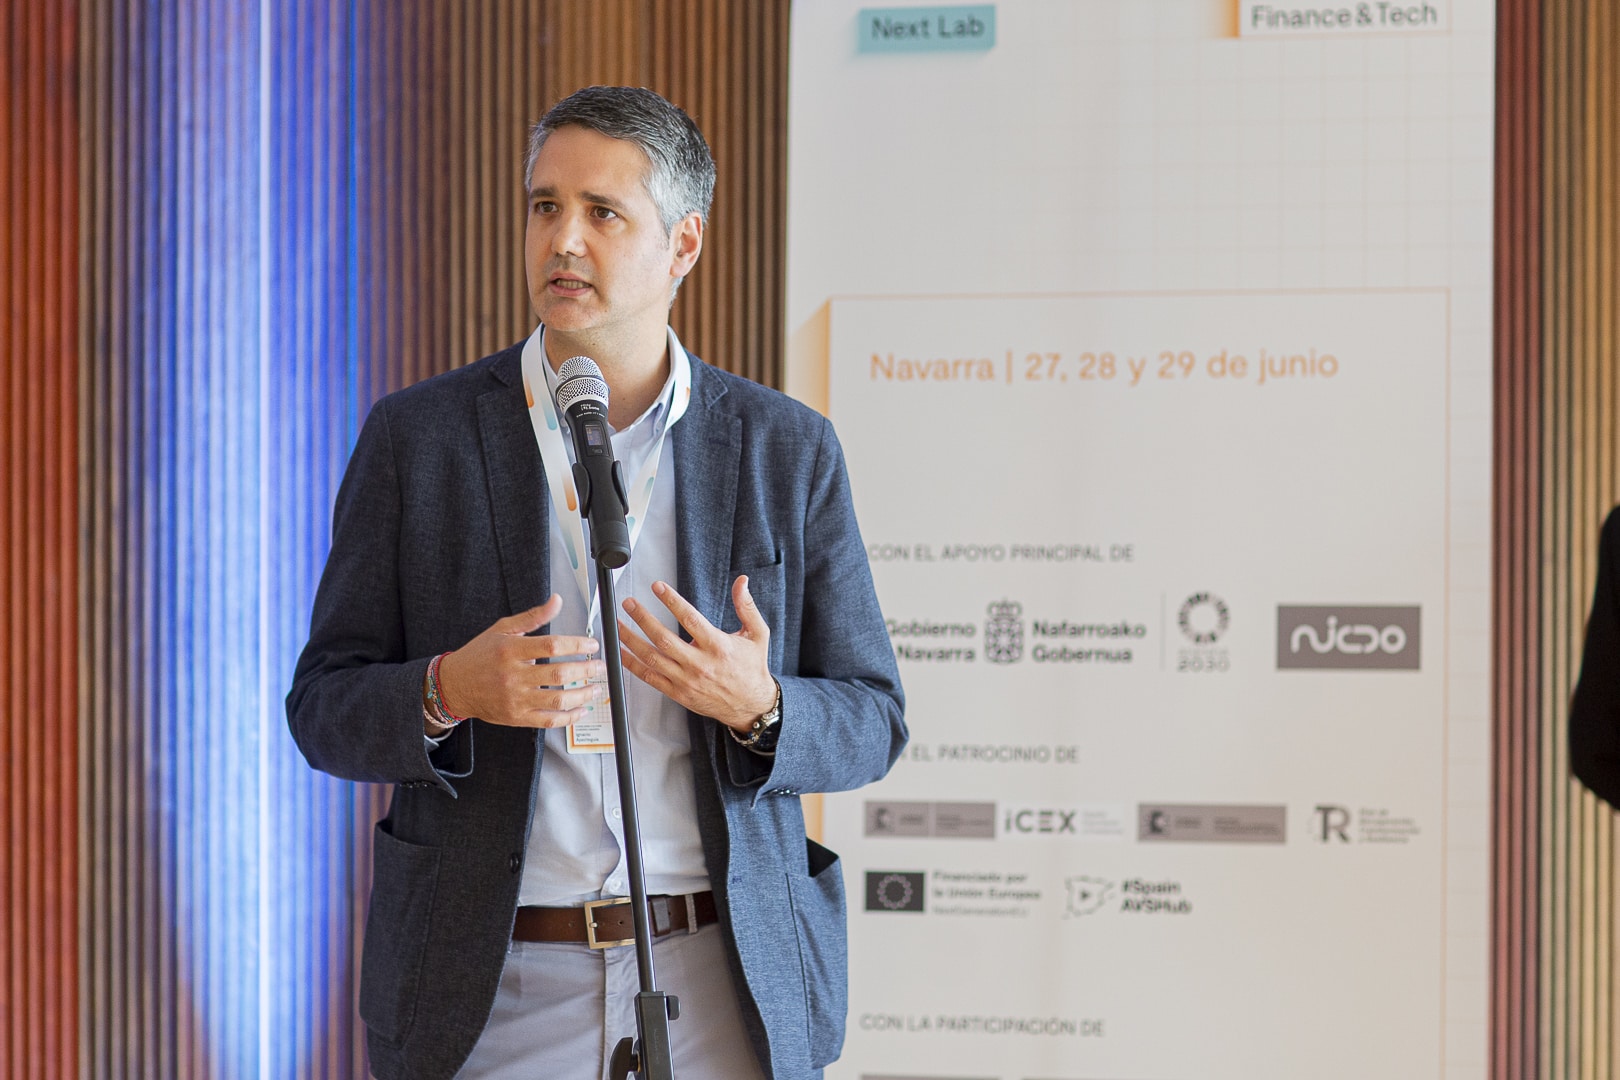 Ignacio Apezteguía, director general de Cultura-Institución Príncipe de Viana en Gobierno de Navarra durante su intervención en Next Lab Finance & Tech Navarra